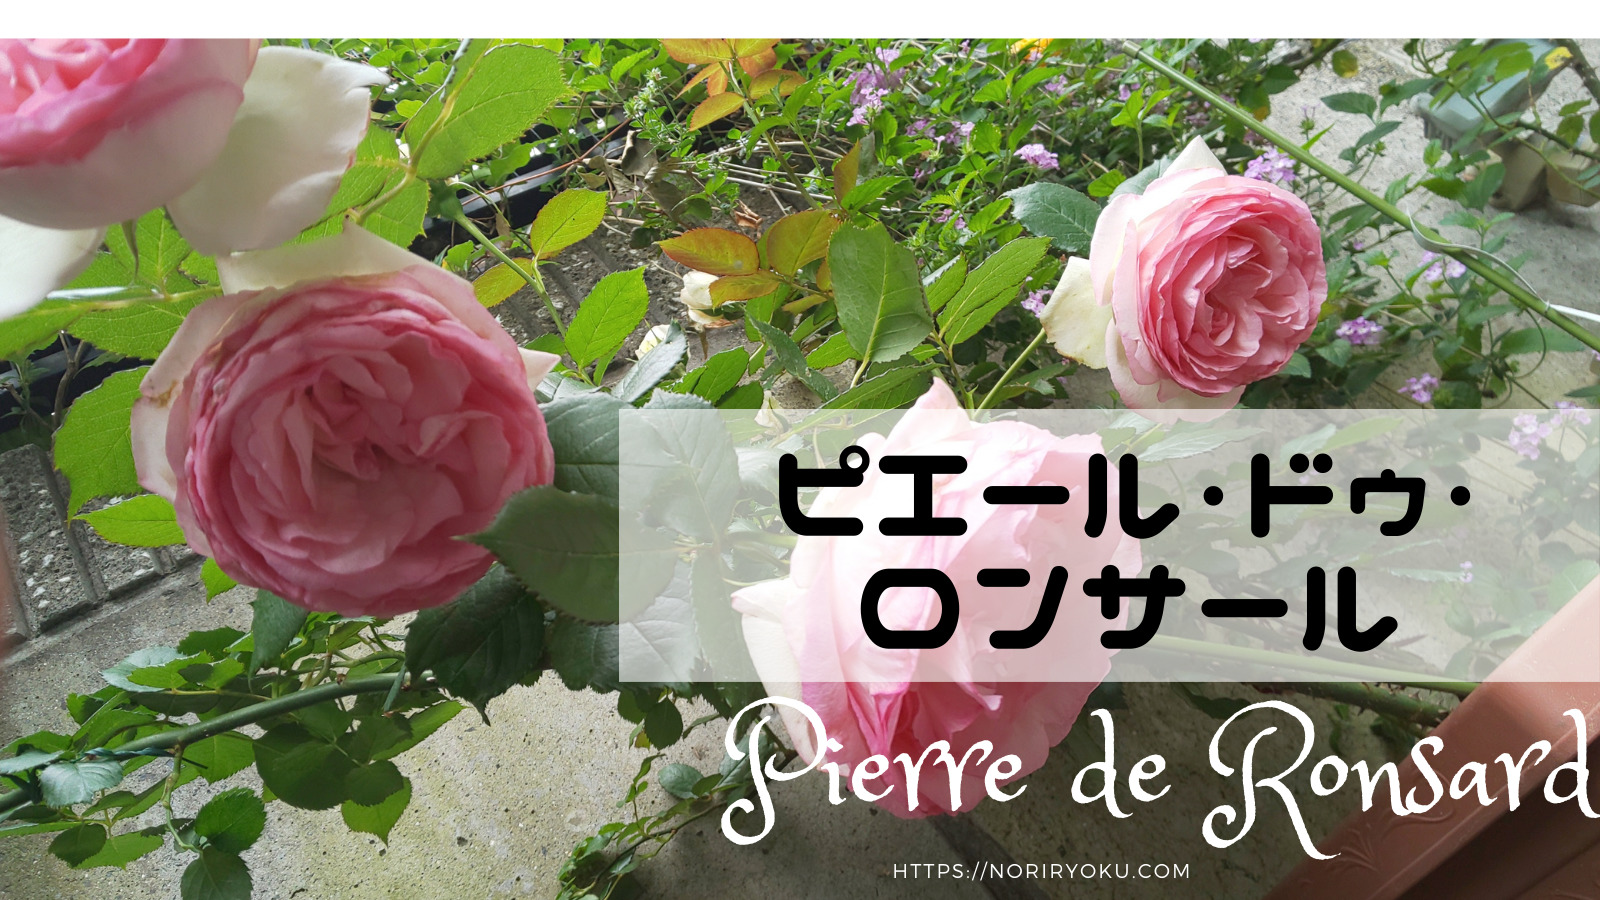 オススメのバラ 買って良かった薔薇品種ピエールドゥロンサール イッポヲブログ イラストの描き方 バラの剪定方法 マイルを貯めて旅行など情報サイト